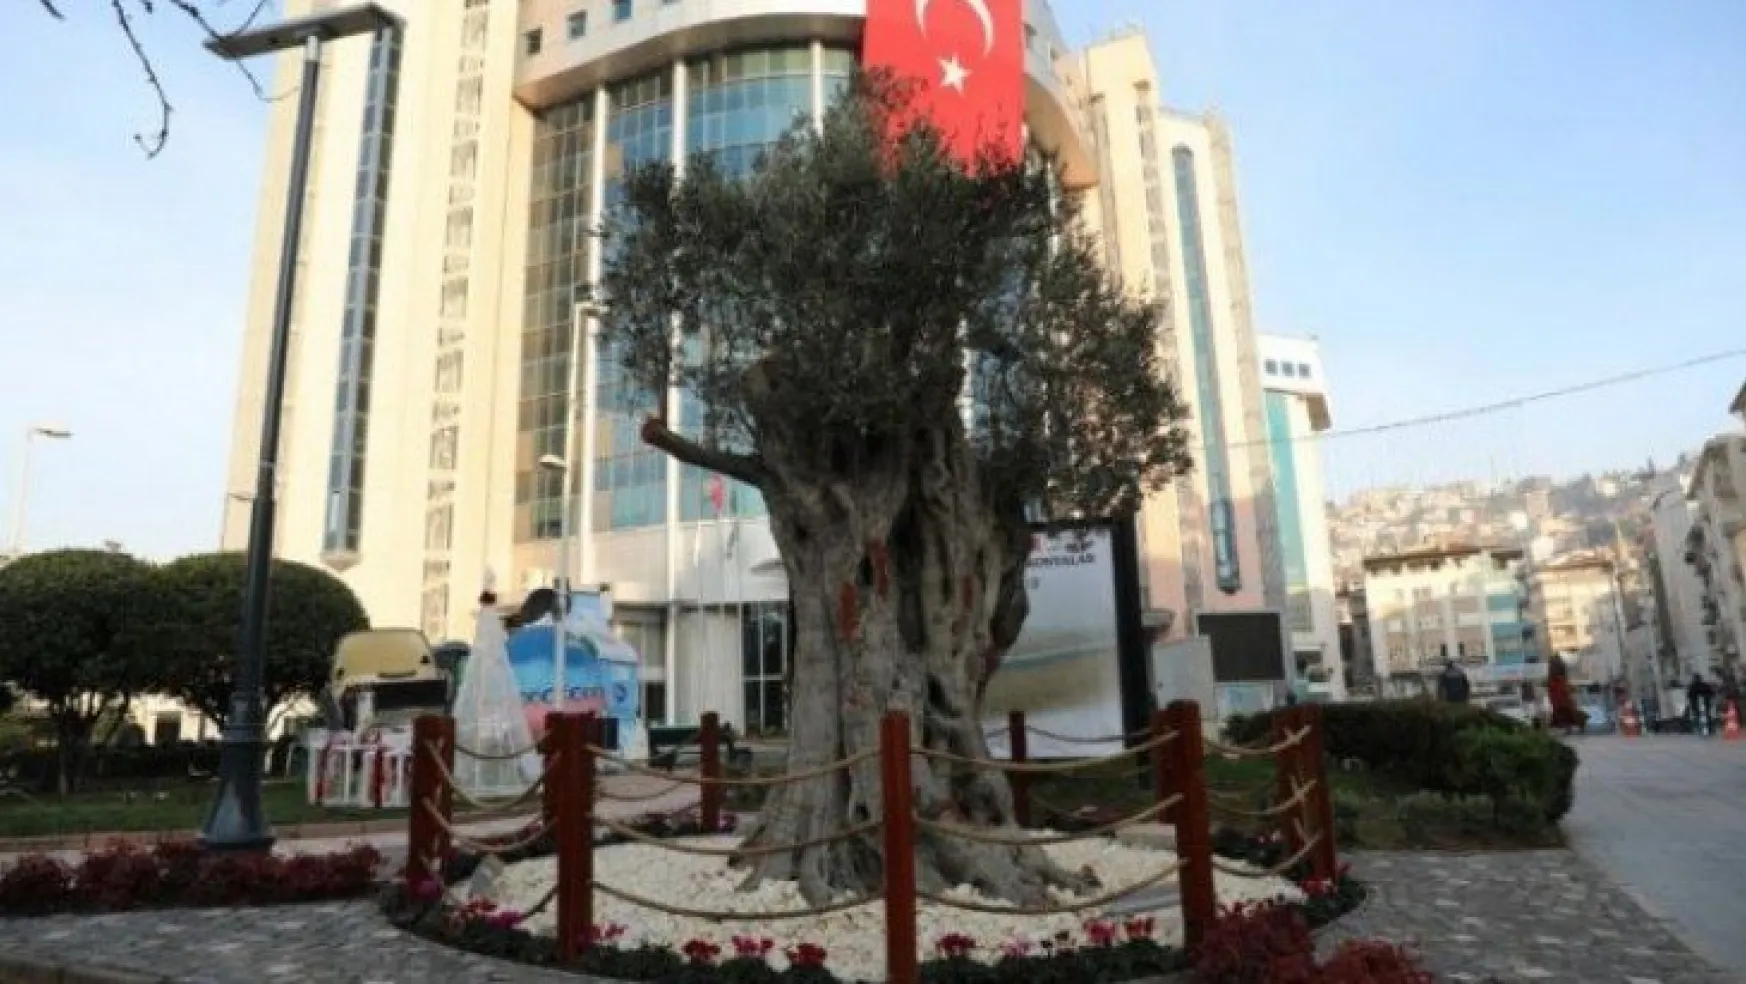 600 yıllık zeytin ağacı İzmit'in yeni sembollerinden biri olacak